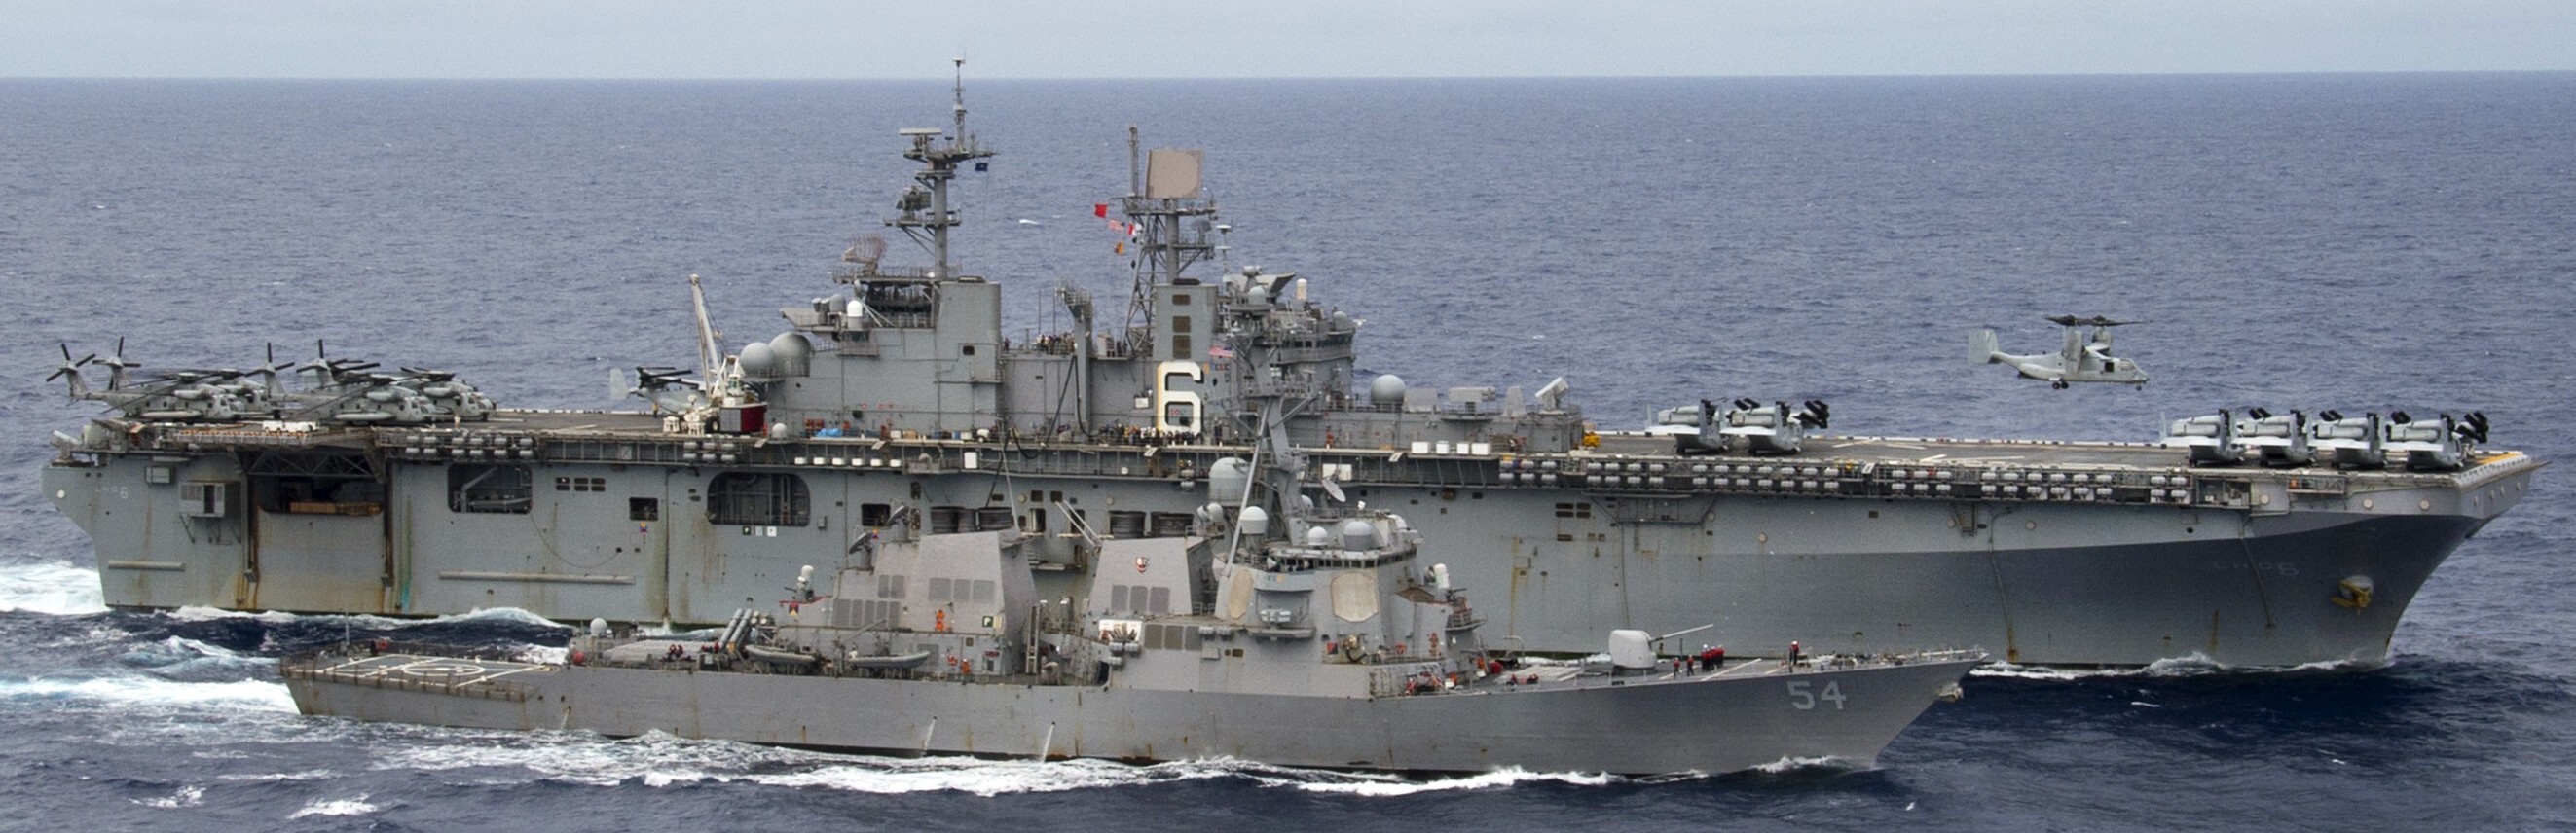 lhd-6 uss bonhomme richard amphibious assault ship landing helicopter dock wasp class us navy 118